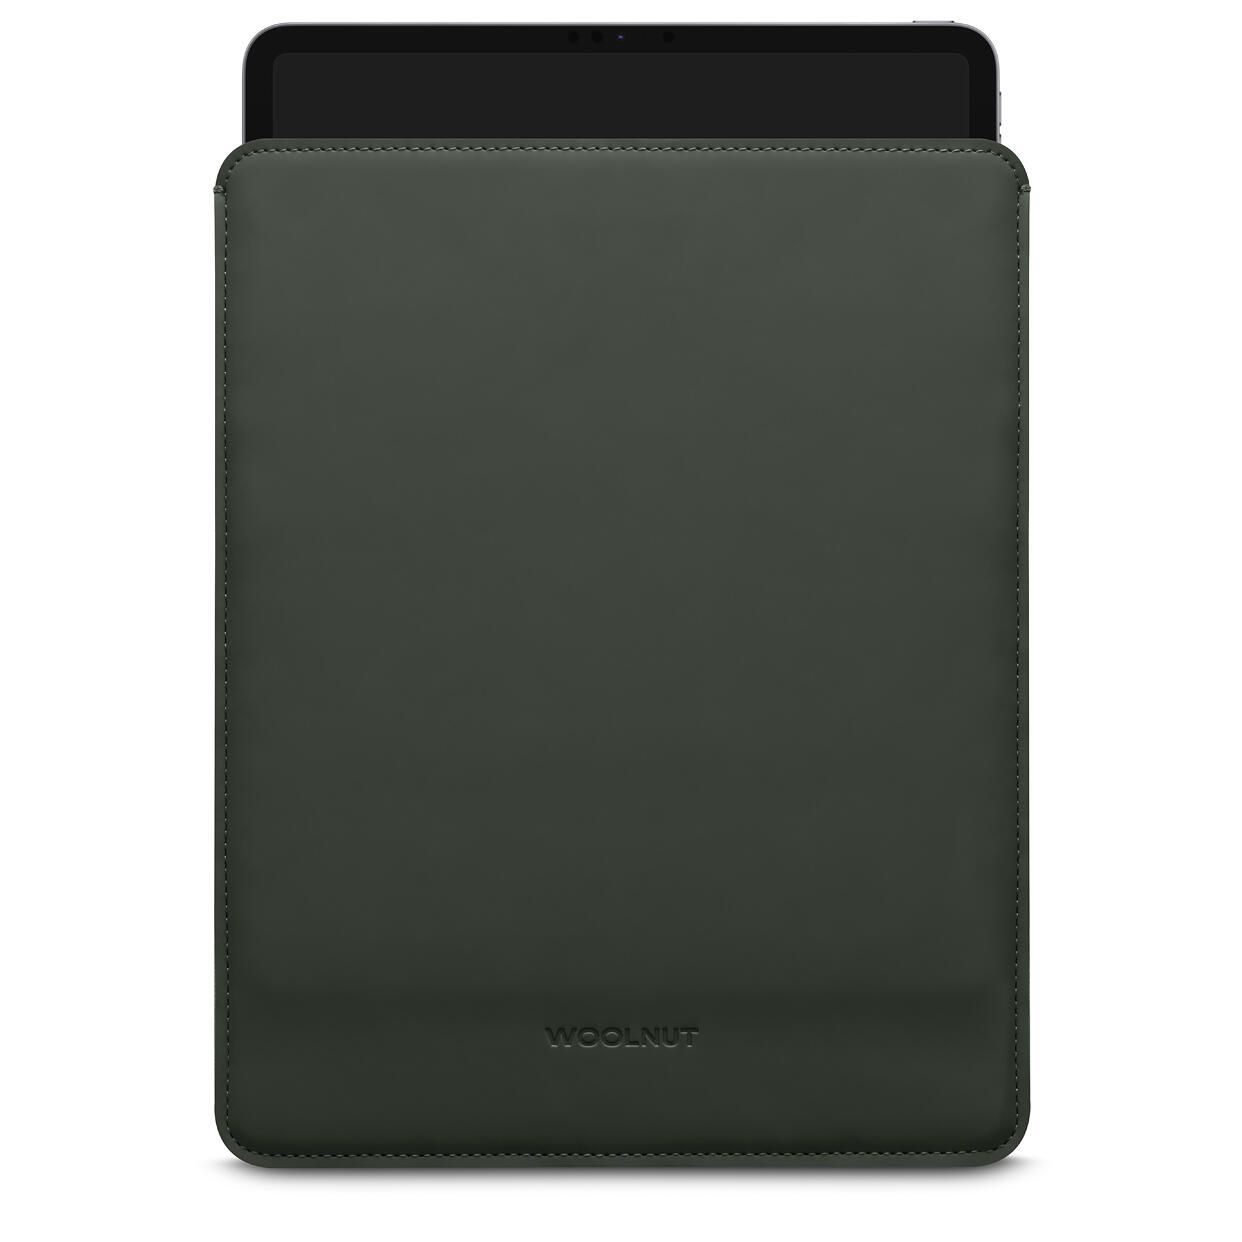 Woolnut beschichtete iPad Hülle für iPad Pro 12,9" & iPad Air , grün